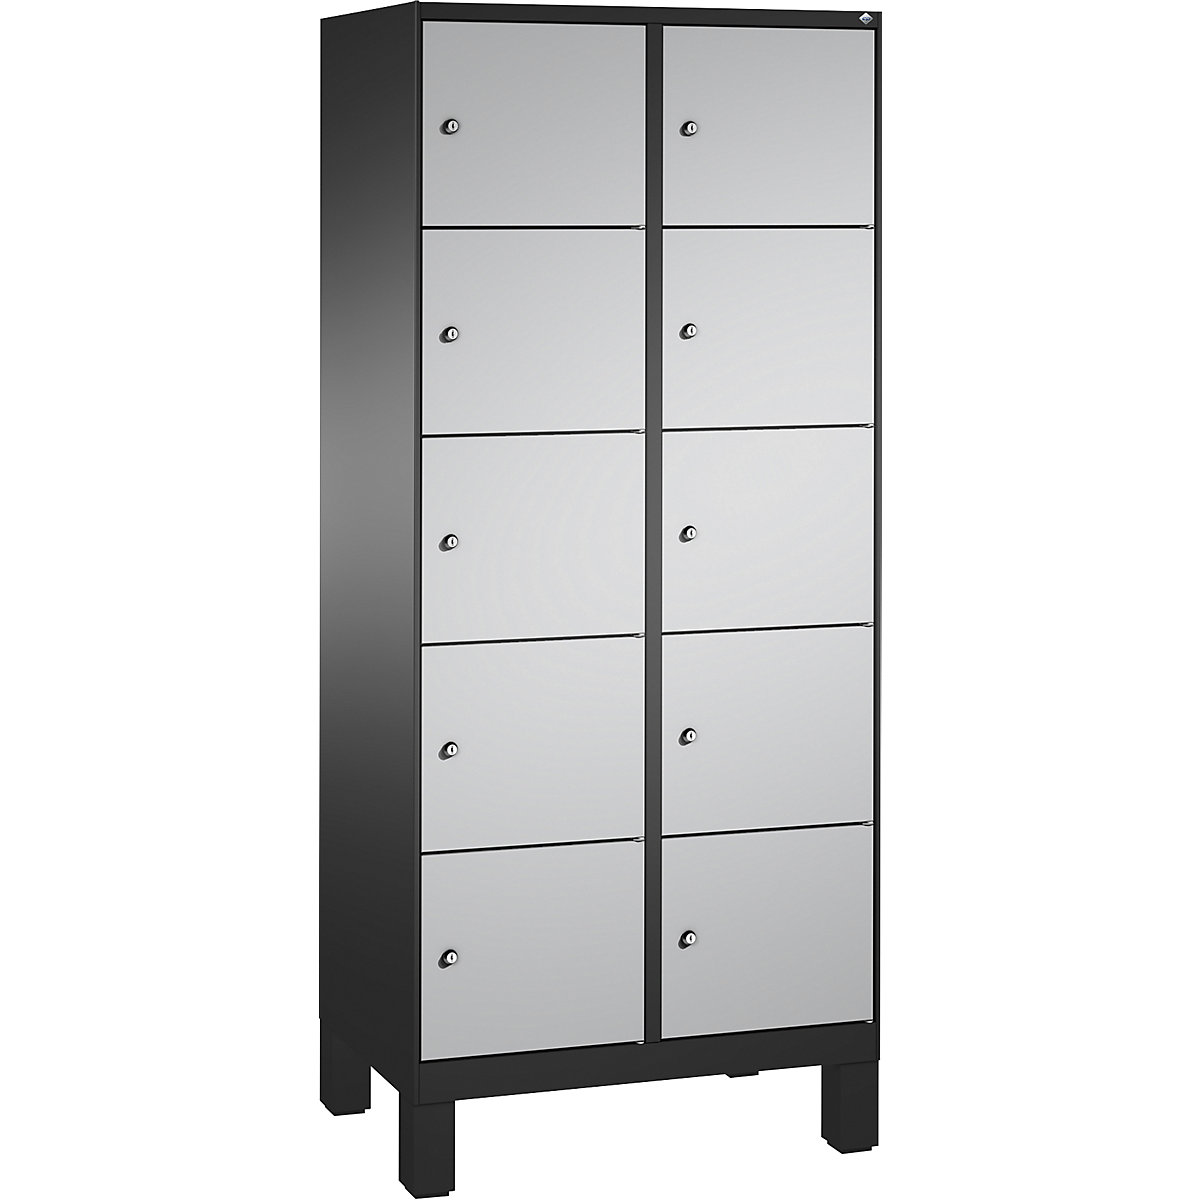 Armoire à casiers sur pieds EVOLO – C+P, 2 compartiments, 5 casiers chacun, largeur compartiments 400 mm, gris noir / aluminium-10